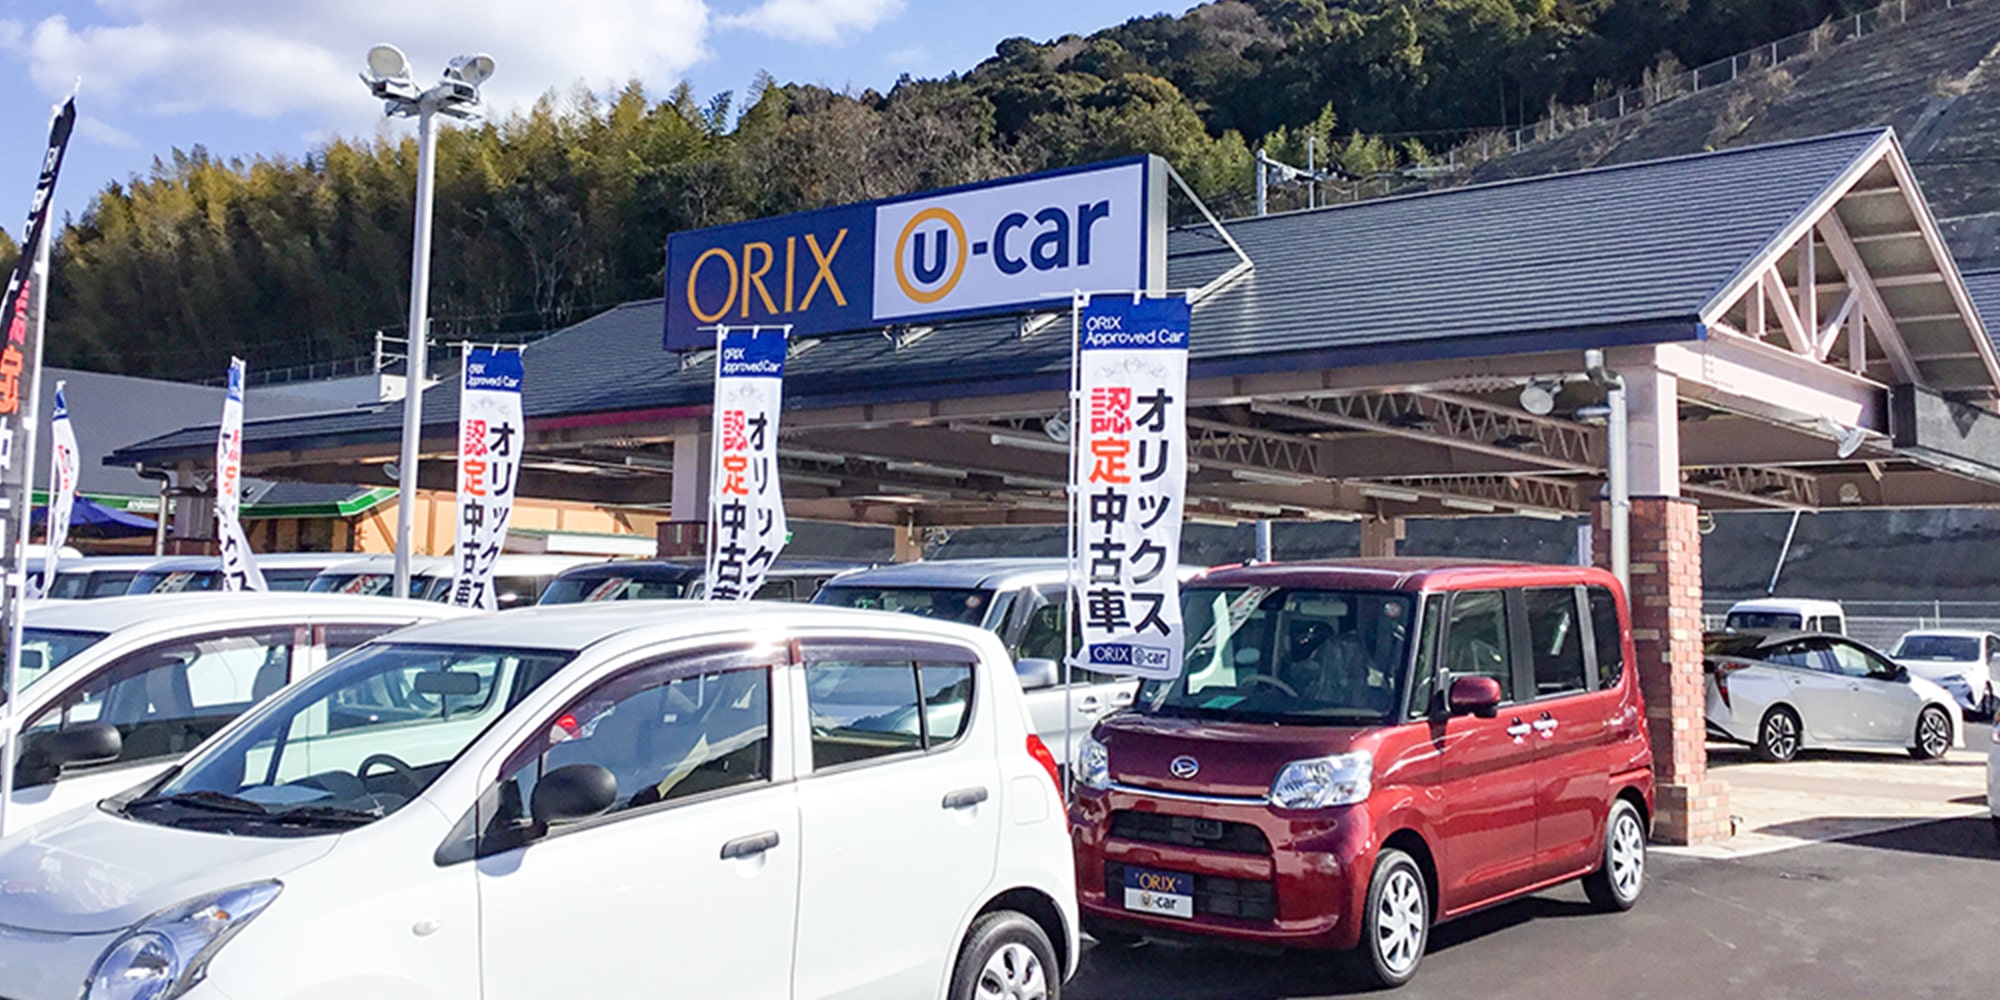 オリックスU-Car 中古車販売 常時100台以上展示 大野城乙金 ガソリンスタンド